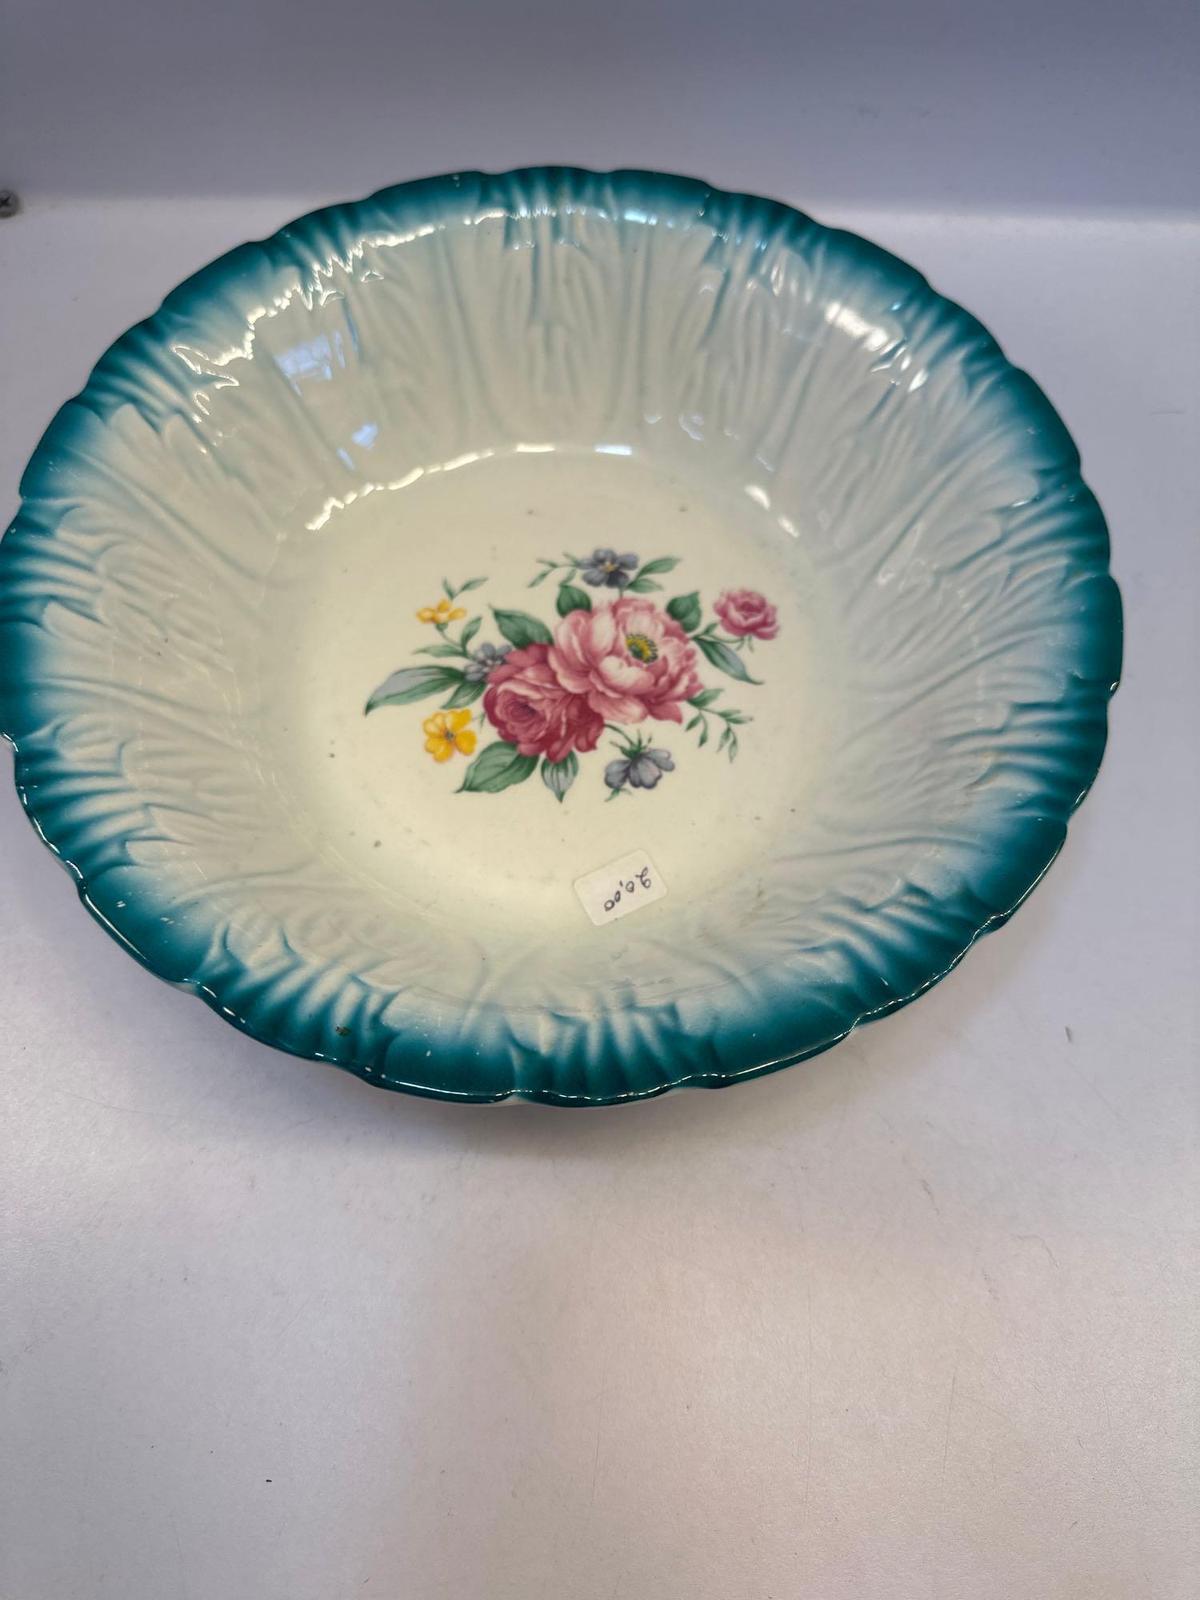 Vintage Homer Laughlin Serving Bowl 9 Inches Blue Trim Floral Ceramic